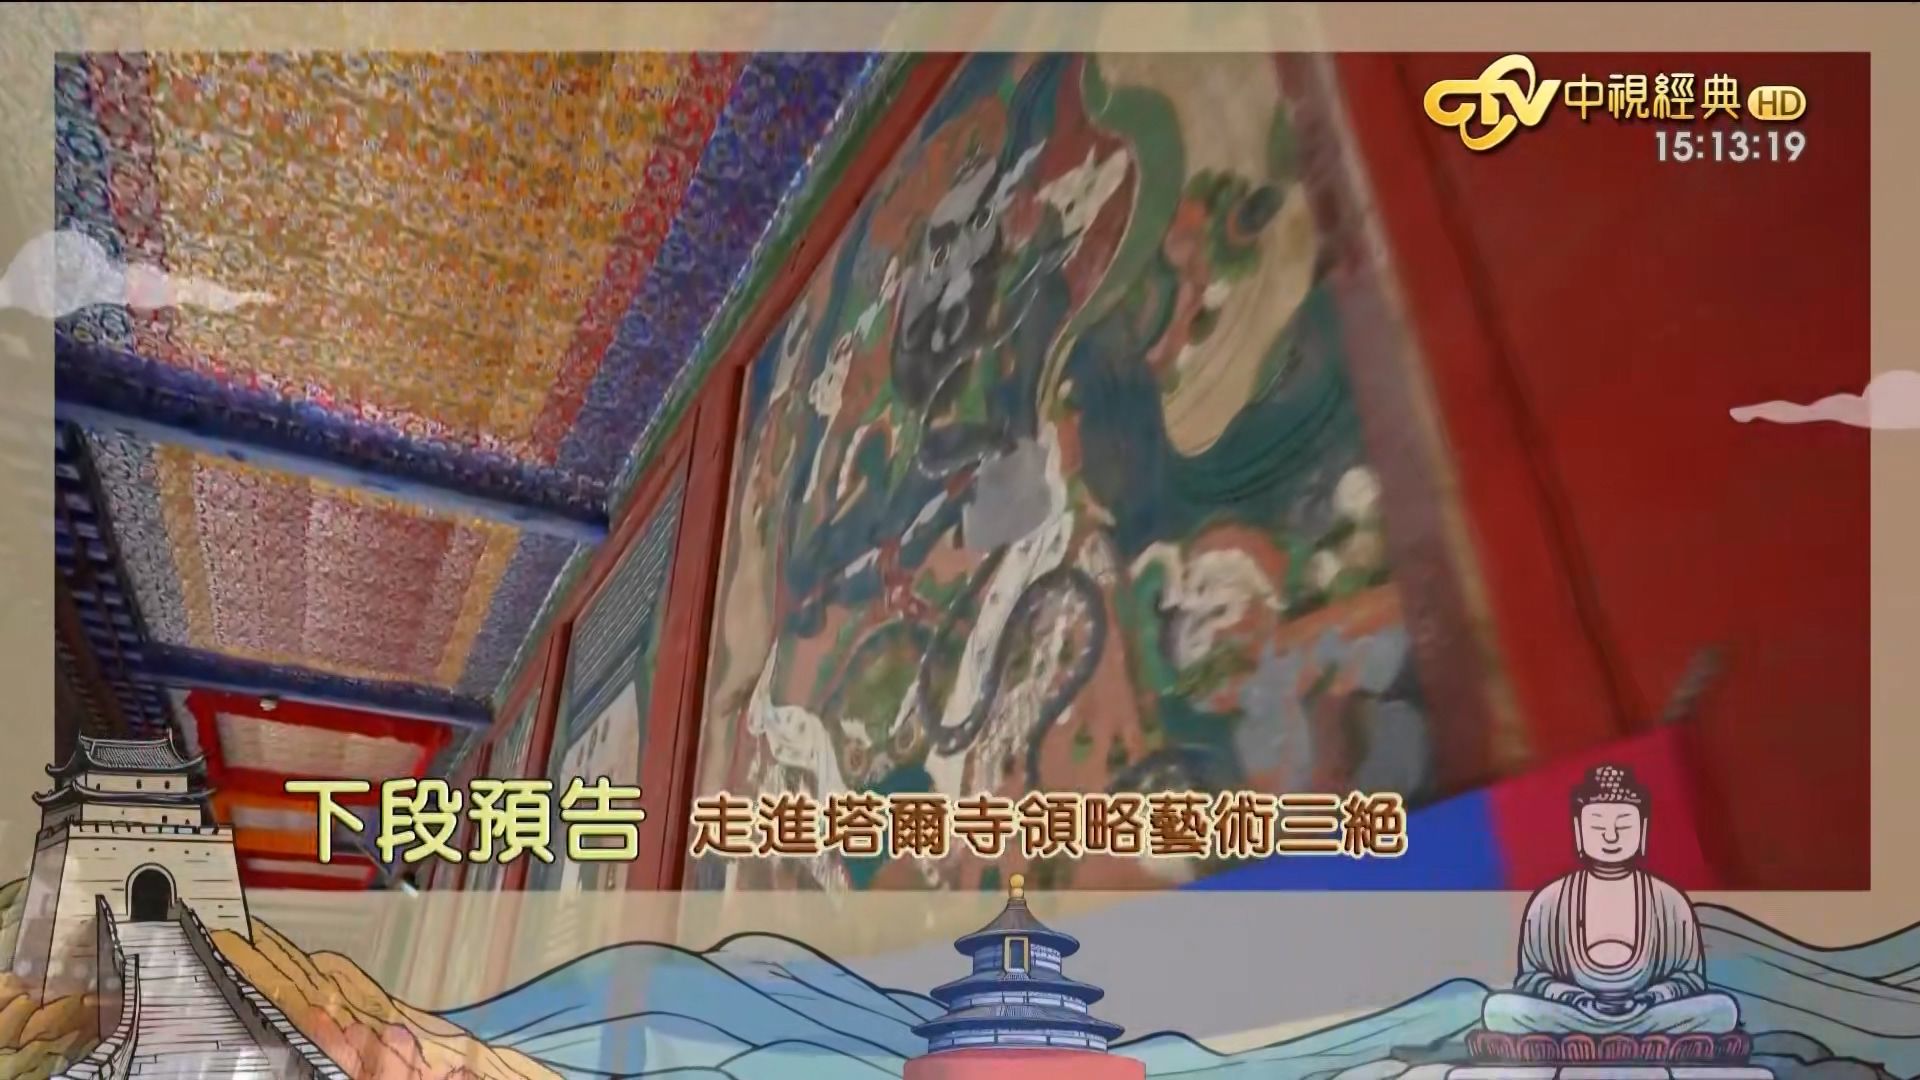 大陆寻奇_第2006集 青海西宁 藏文化博物院、塔尔寺、青海藏毯、土楼观、湟源排灯等